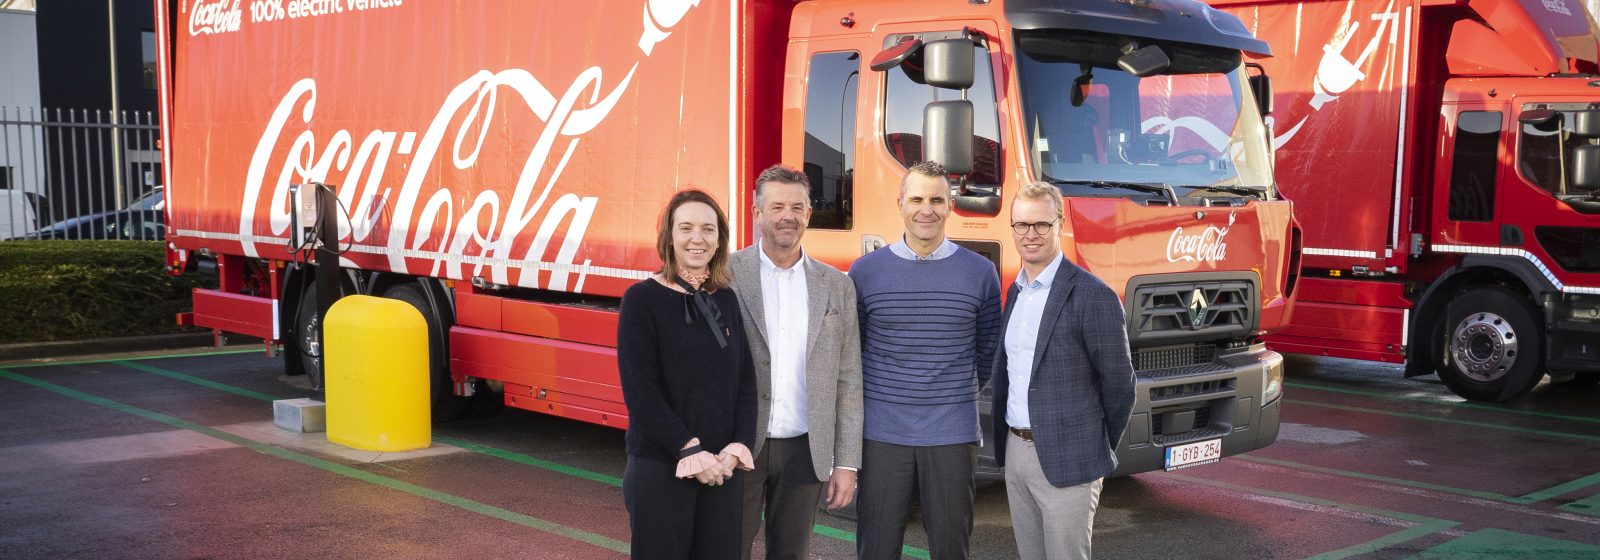 E-trucks Coca-Cola